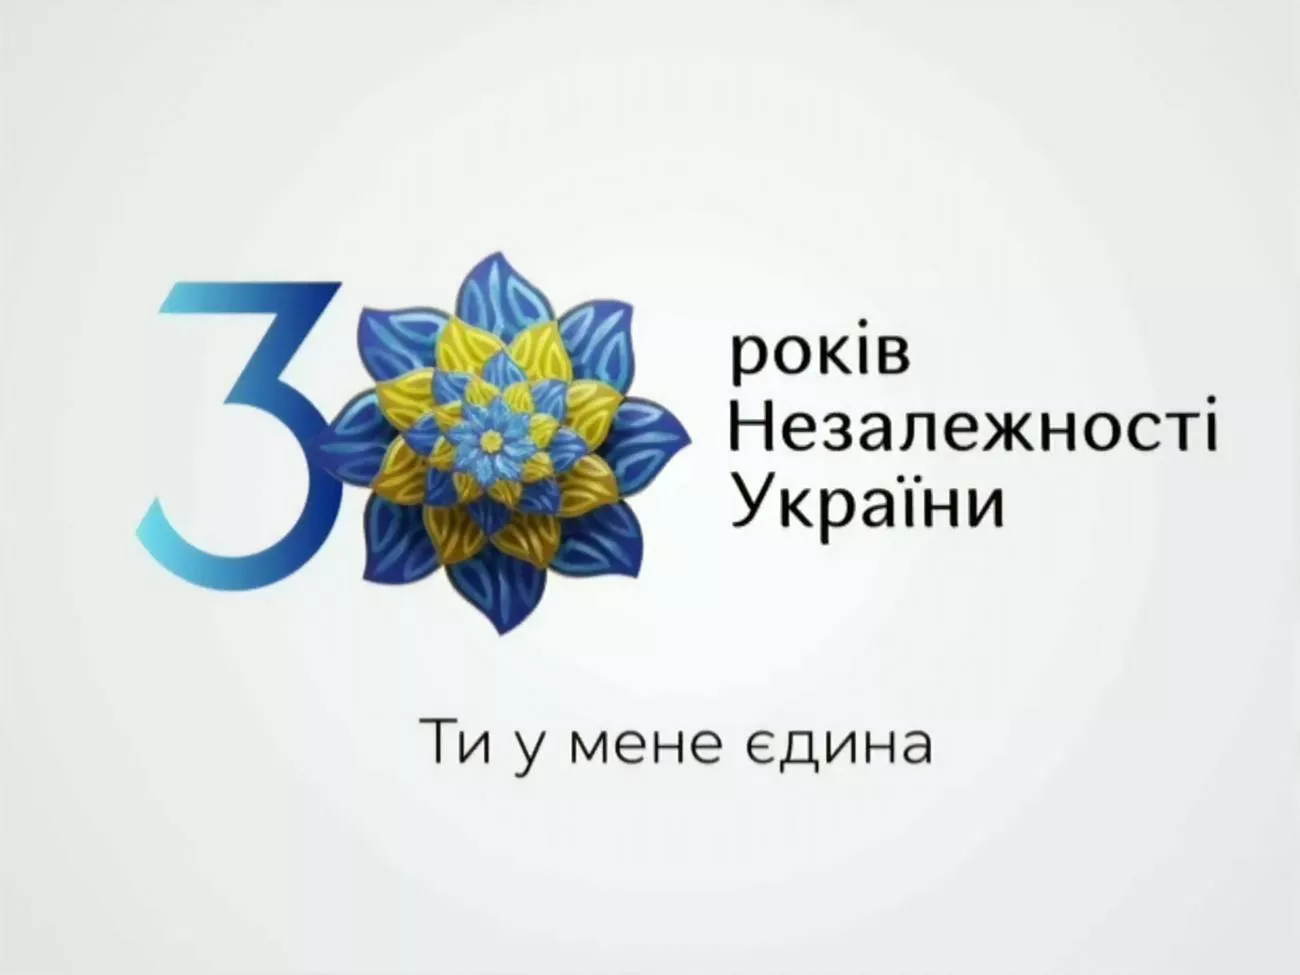 В интервью "Сегодня" президент рассказал, что он сам вкладывает в смысл слогана, выбранного к празднованию 30-летия независимости Украины